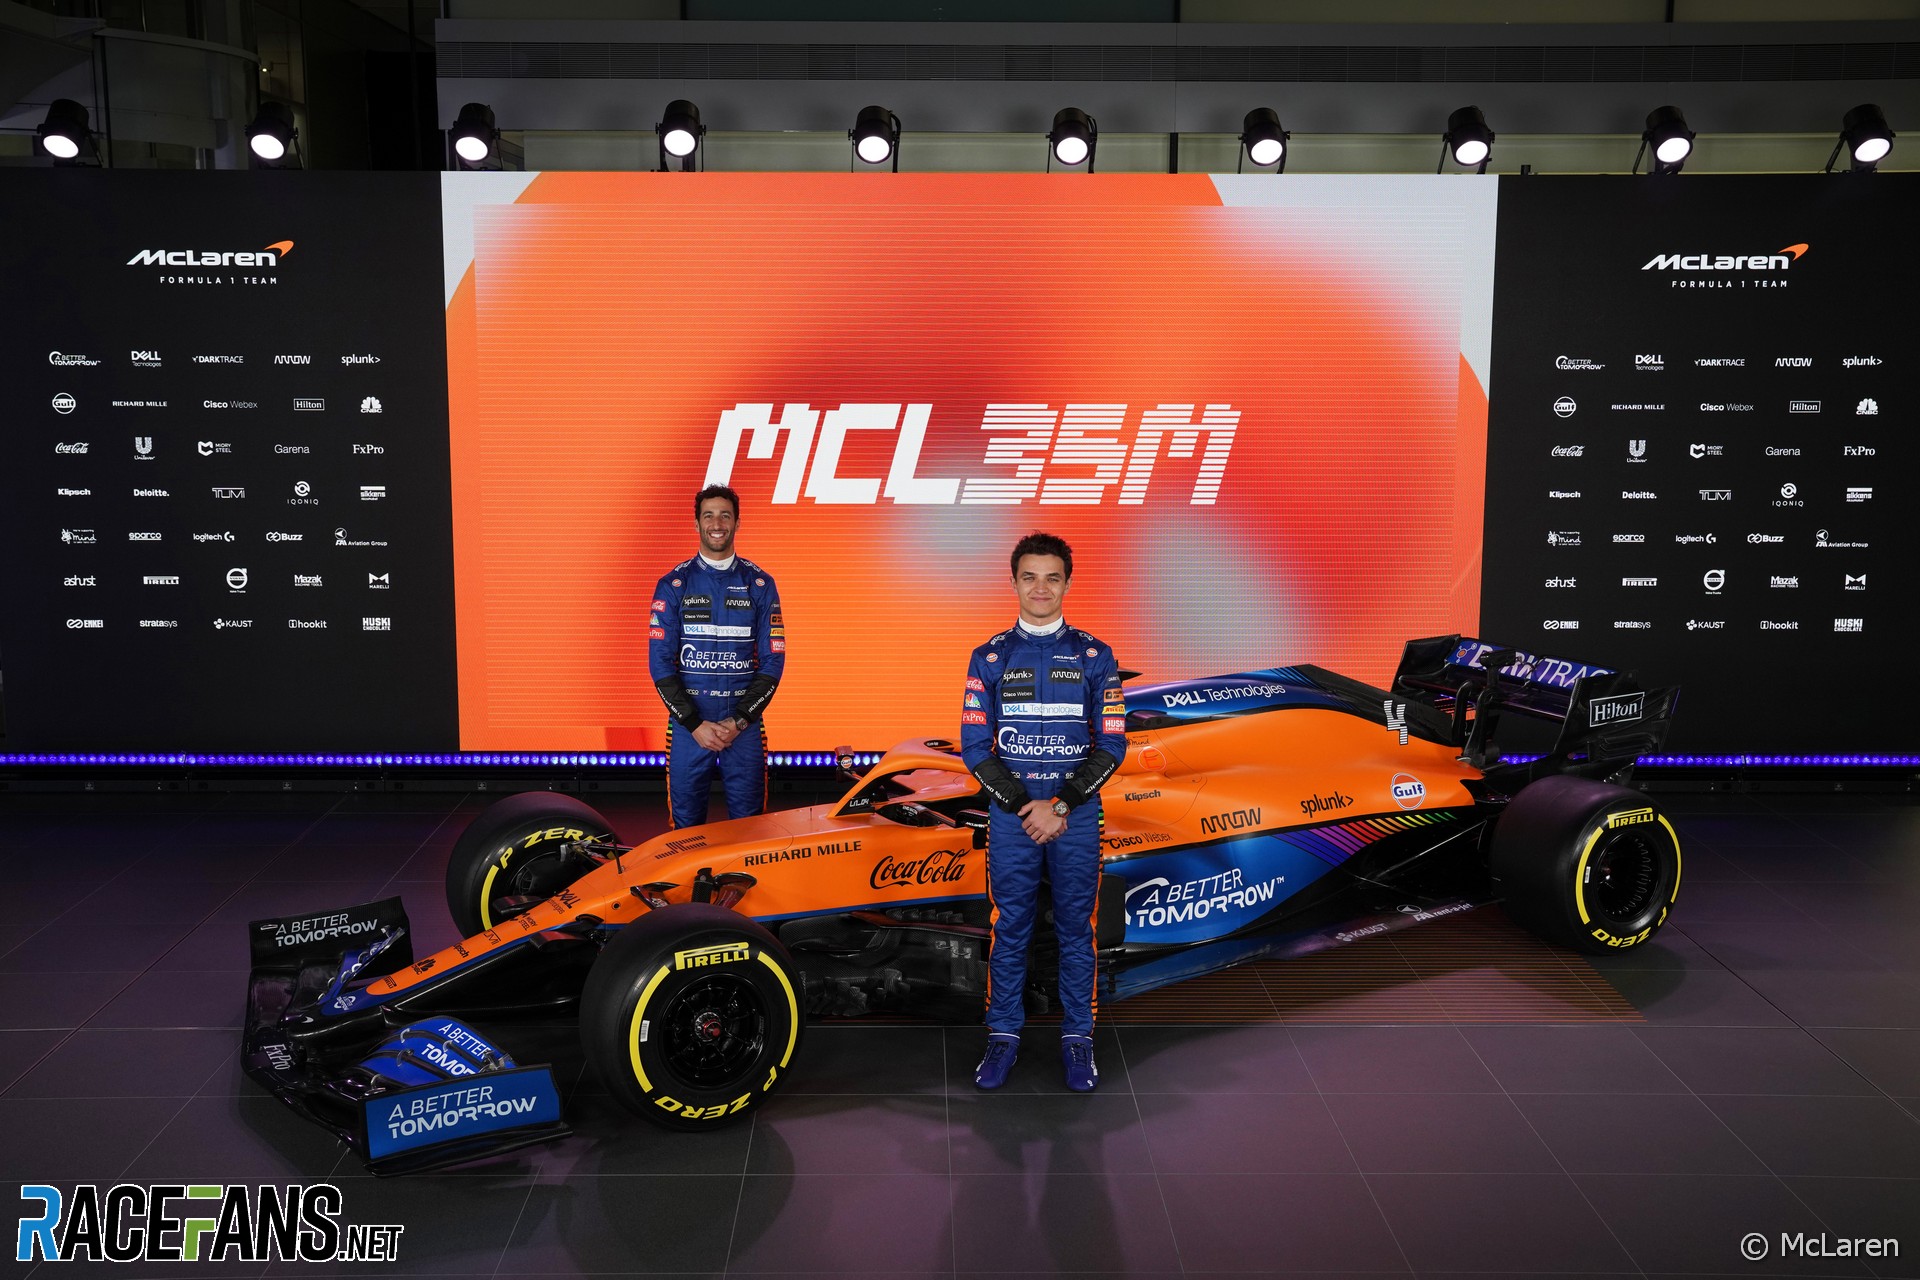 McLaren F1 drivers